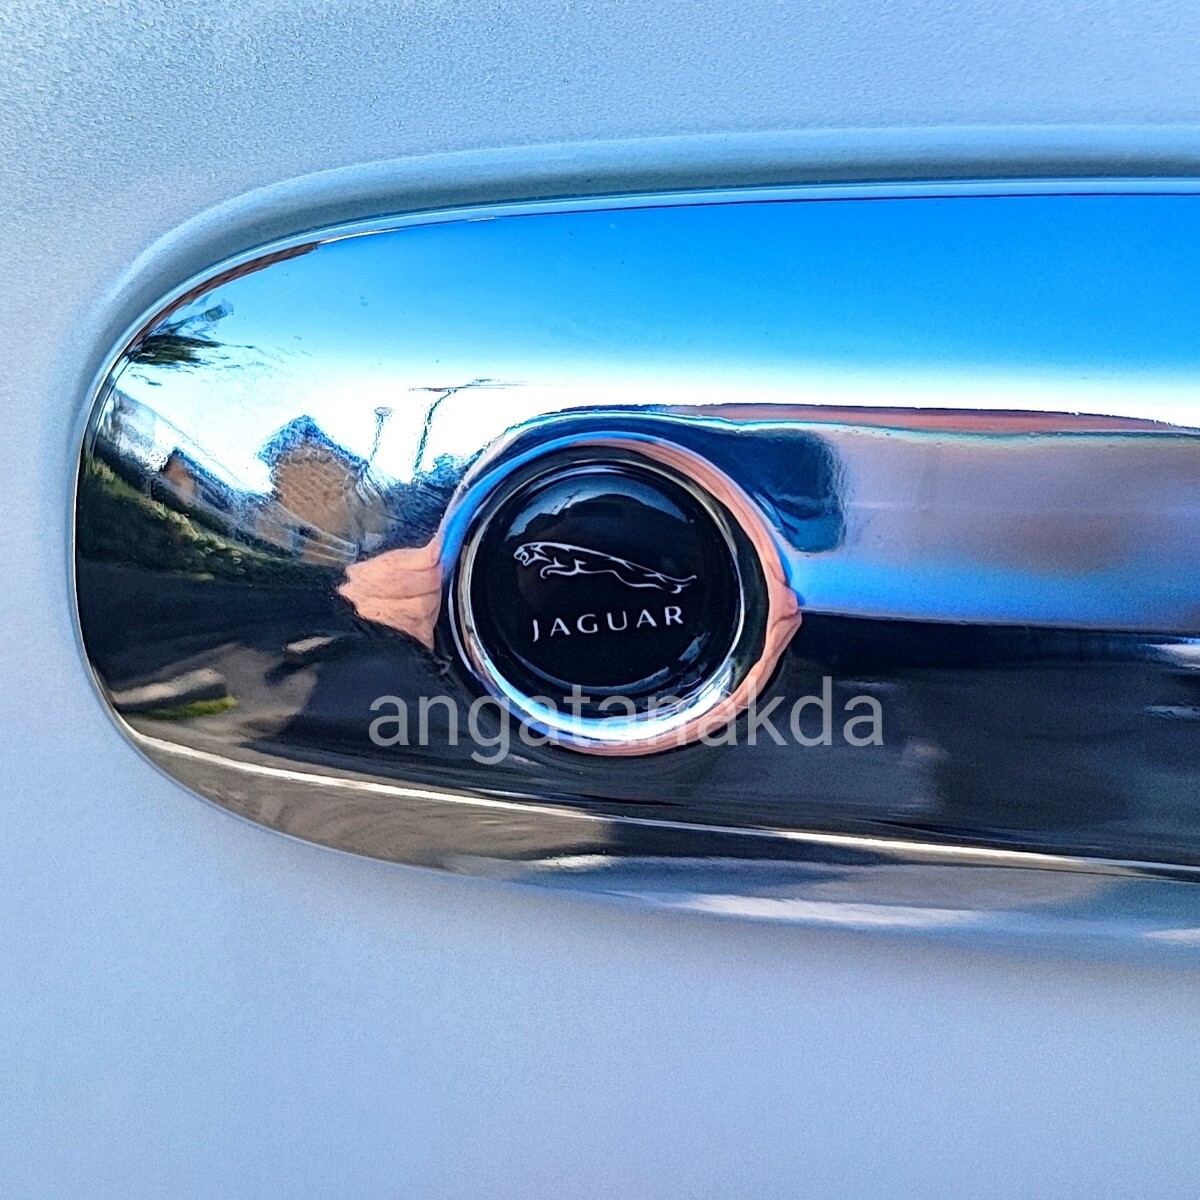 JAGUAR Jaguar B 3D crystal key hole sticker # keyless emblem luxury 